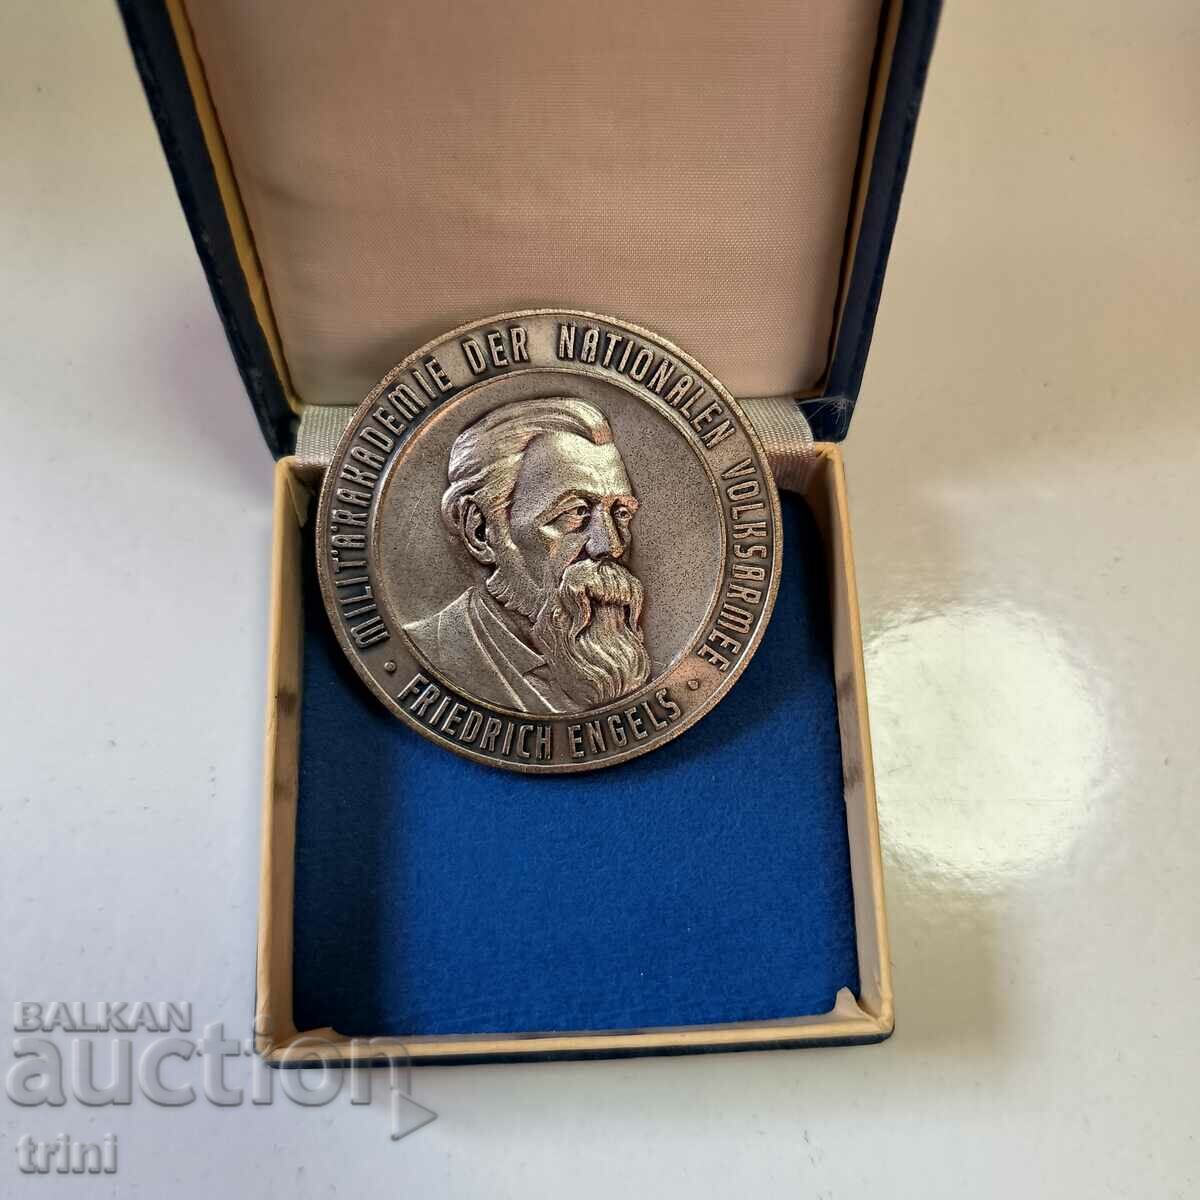 Friedrich Engels GDR Military Academy Medal